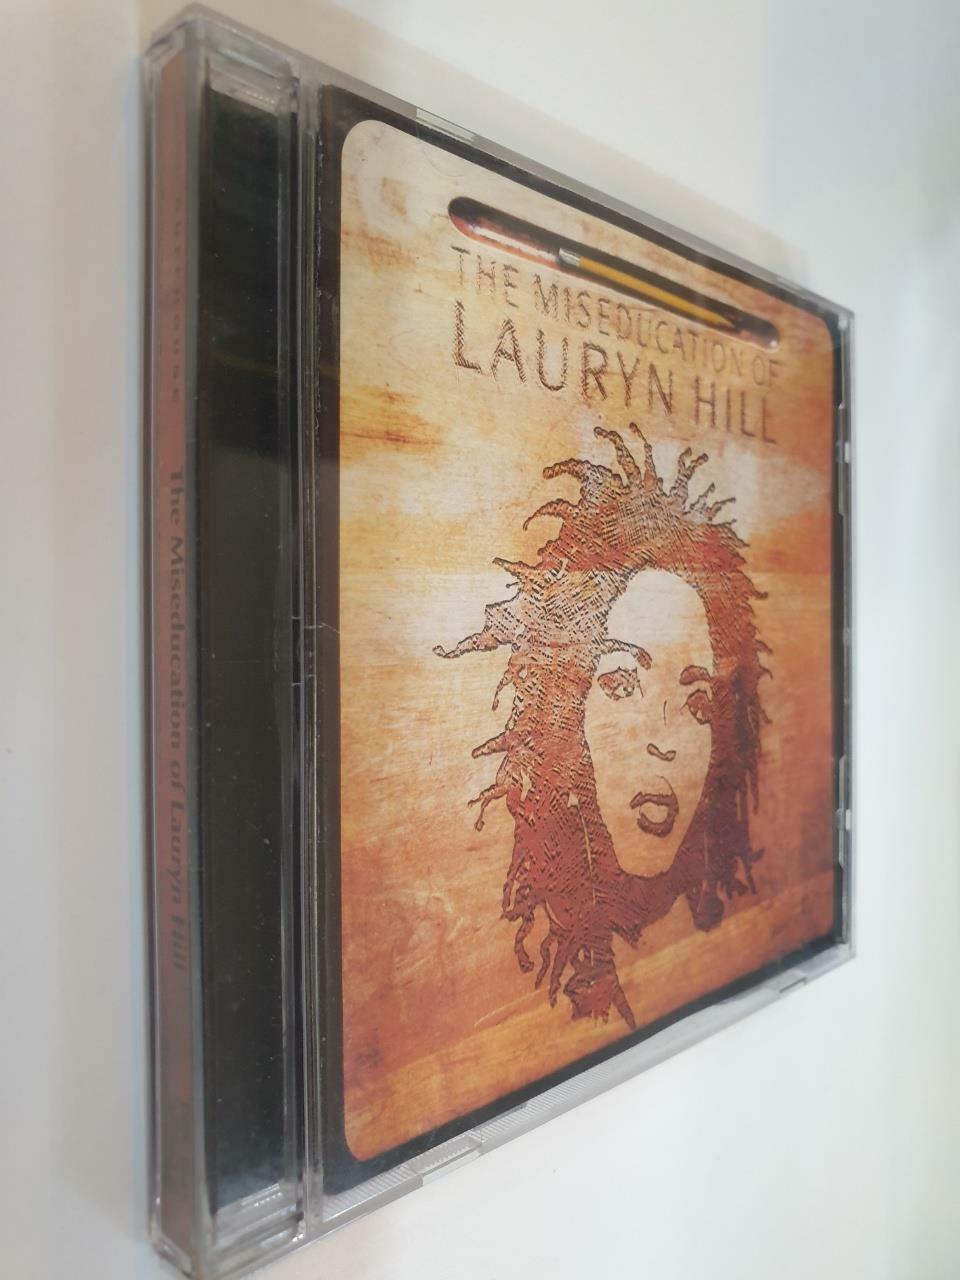 [중고] Lauryn Hill - The Miseducation Of Lauryn Hill